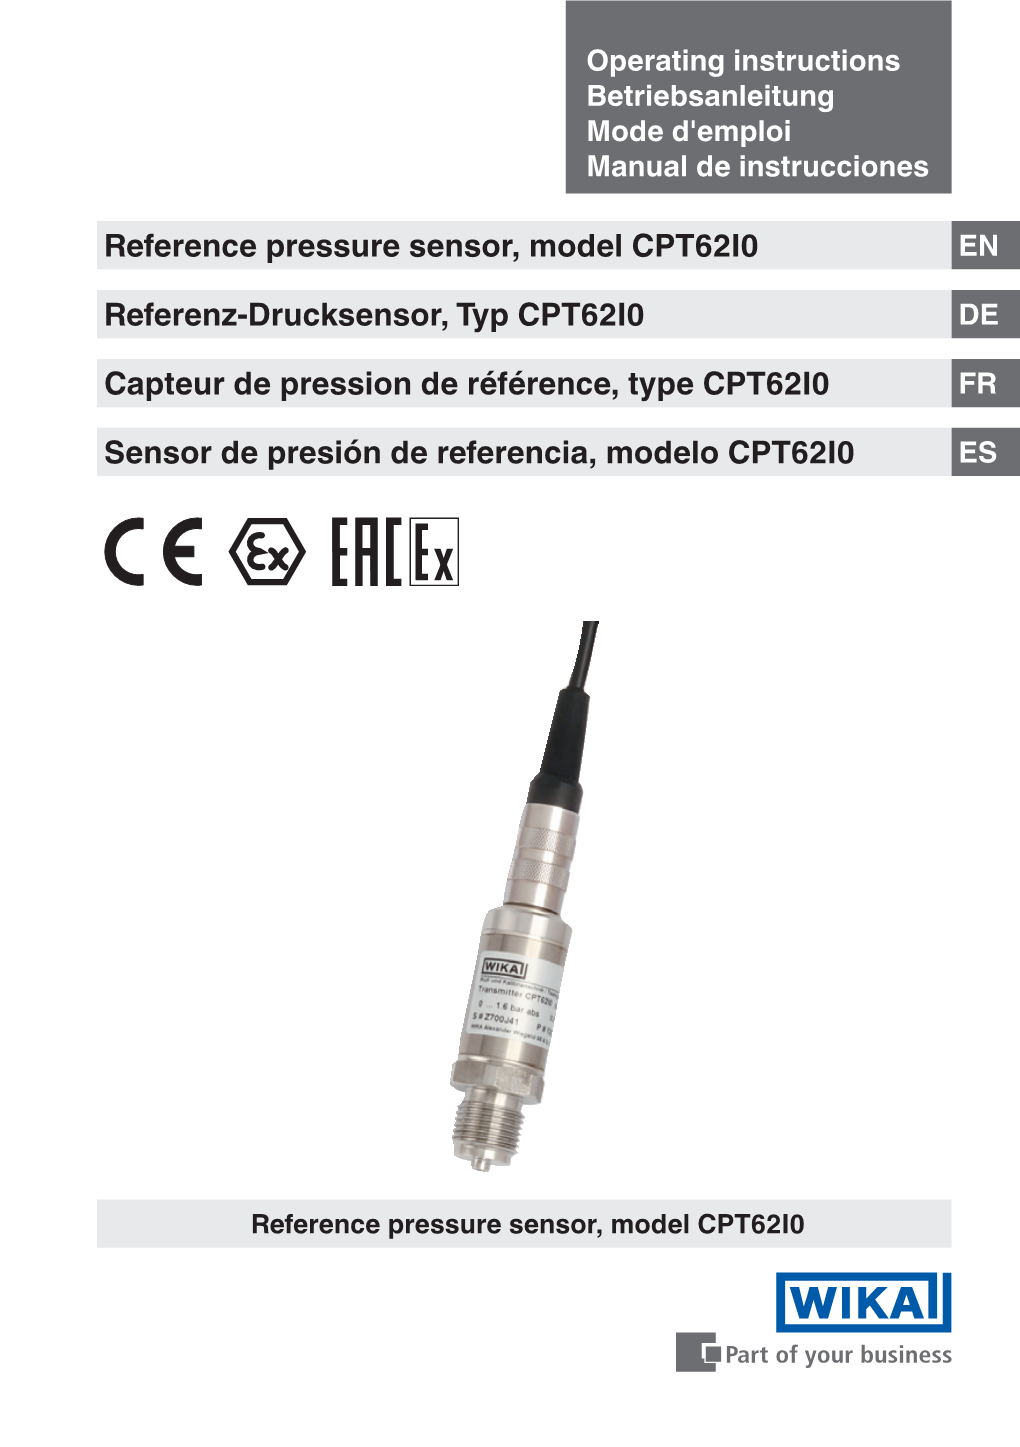 Reference Pressure Sensor, Model CPT62I0 Referenz-Drucksensor, Typ CPT62I0 Capteur De Pression De Référence, Type CPT62I0 Sens